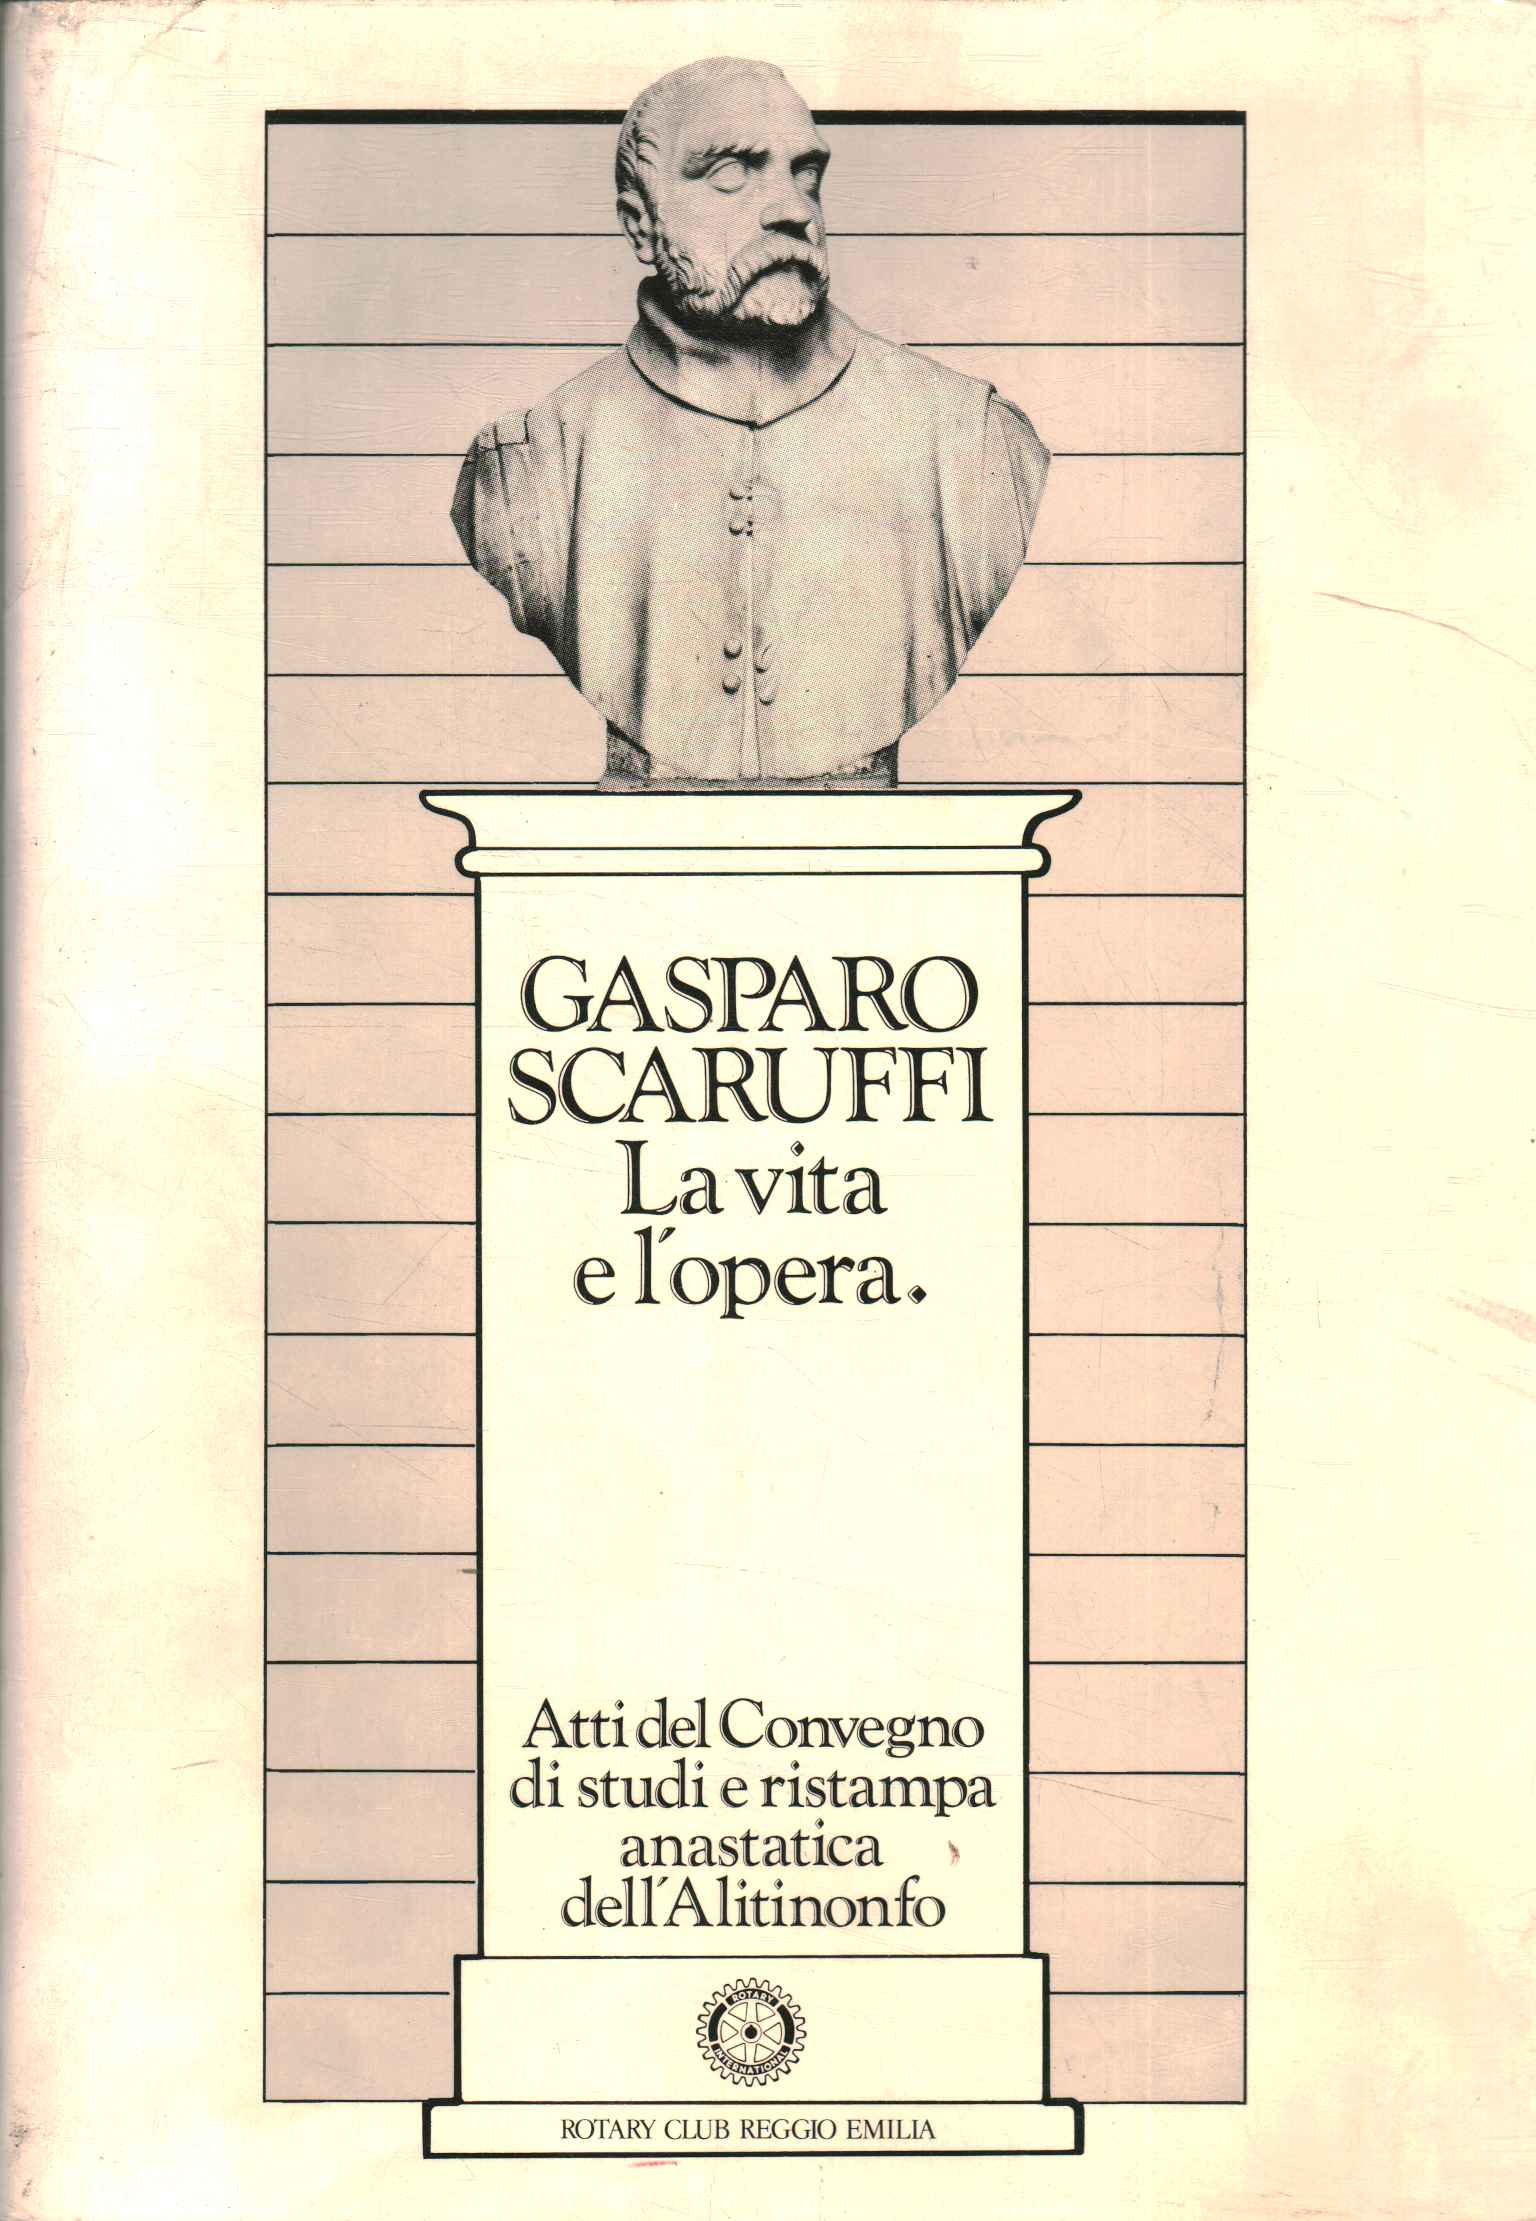 Gasparo Scaruffi. La vie et l'apostrophe